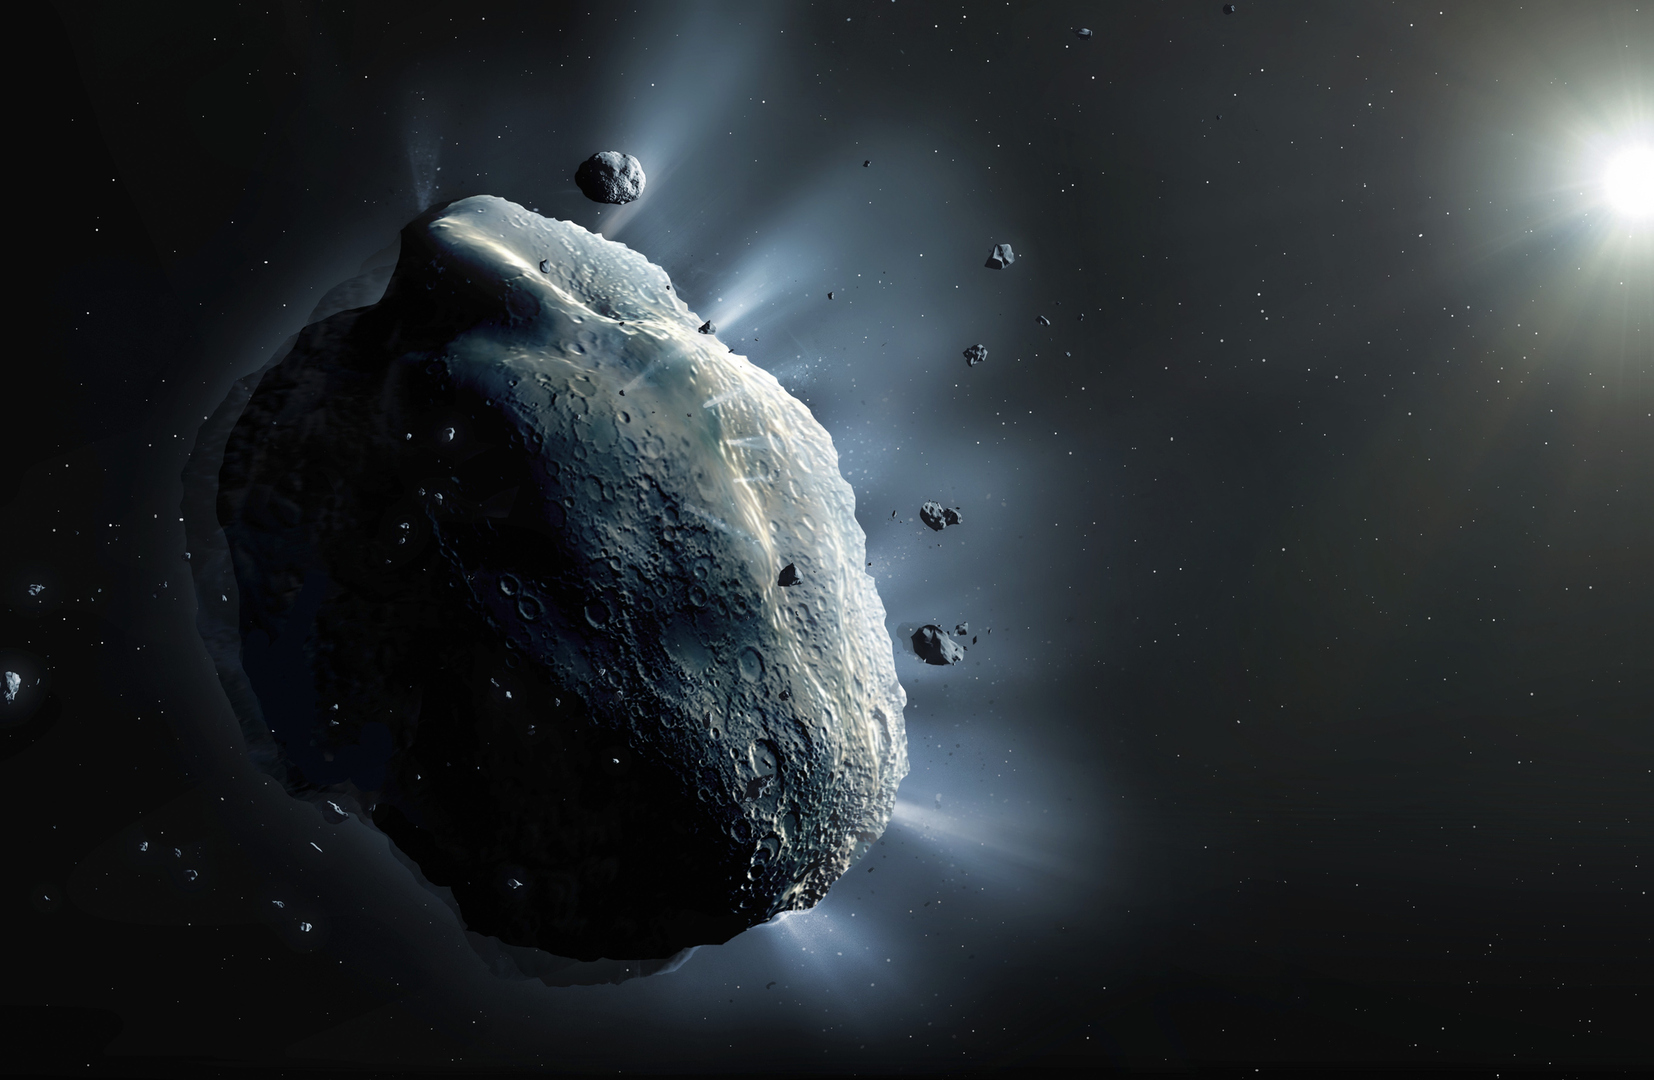 كويكب غامض قريب من الأرض يصبح أكثر غرابة بعد اكتشاف ذيل له